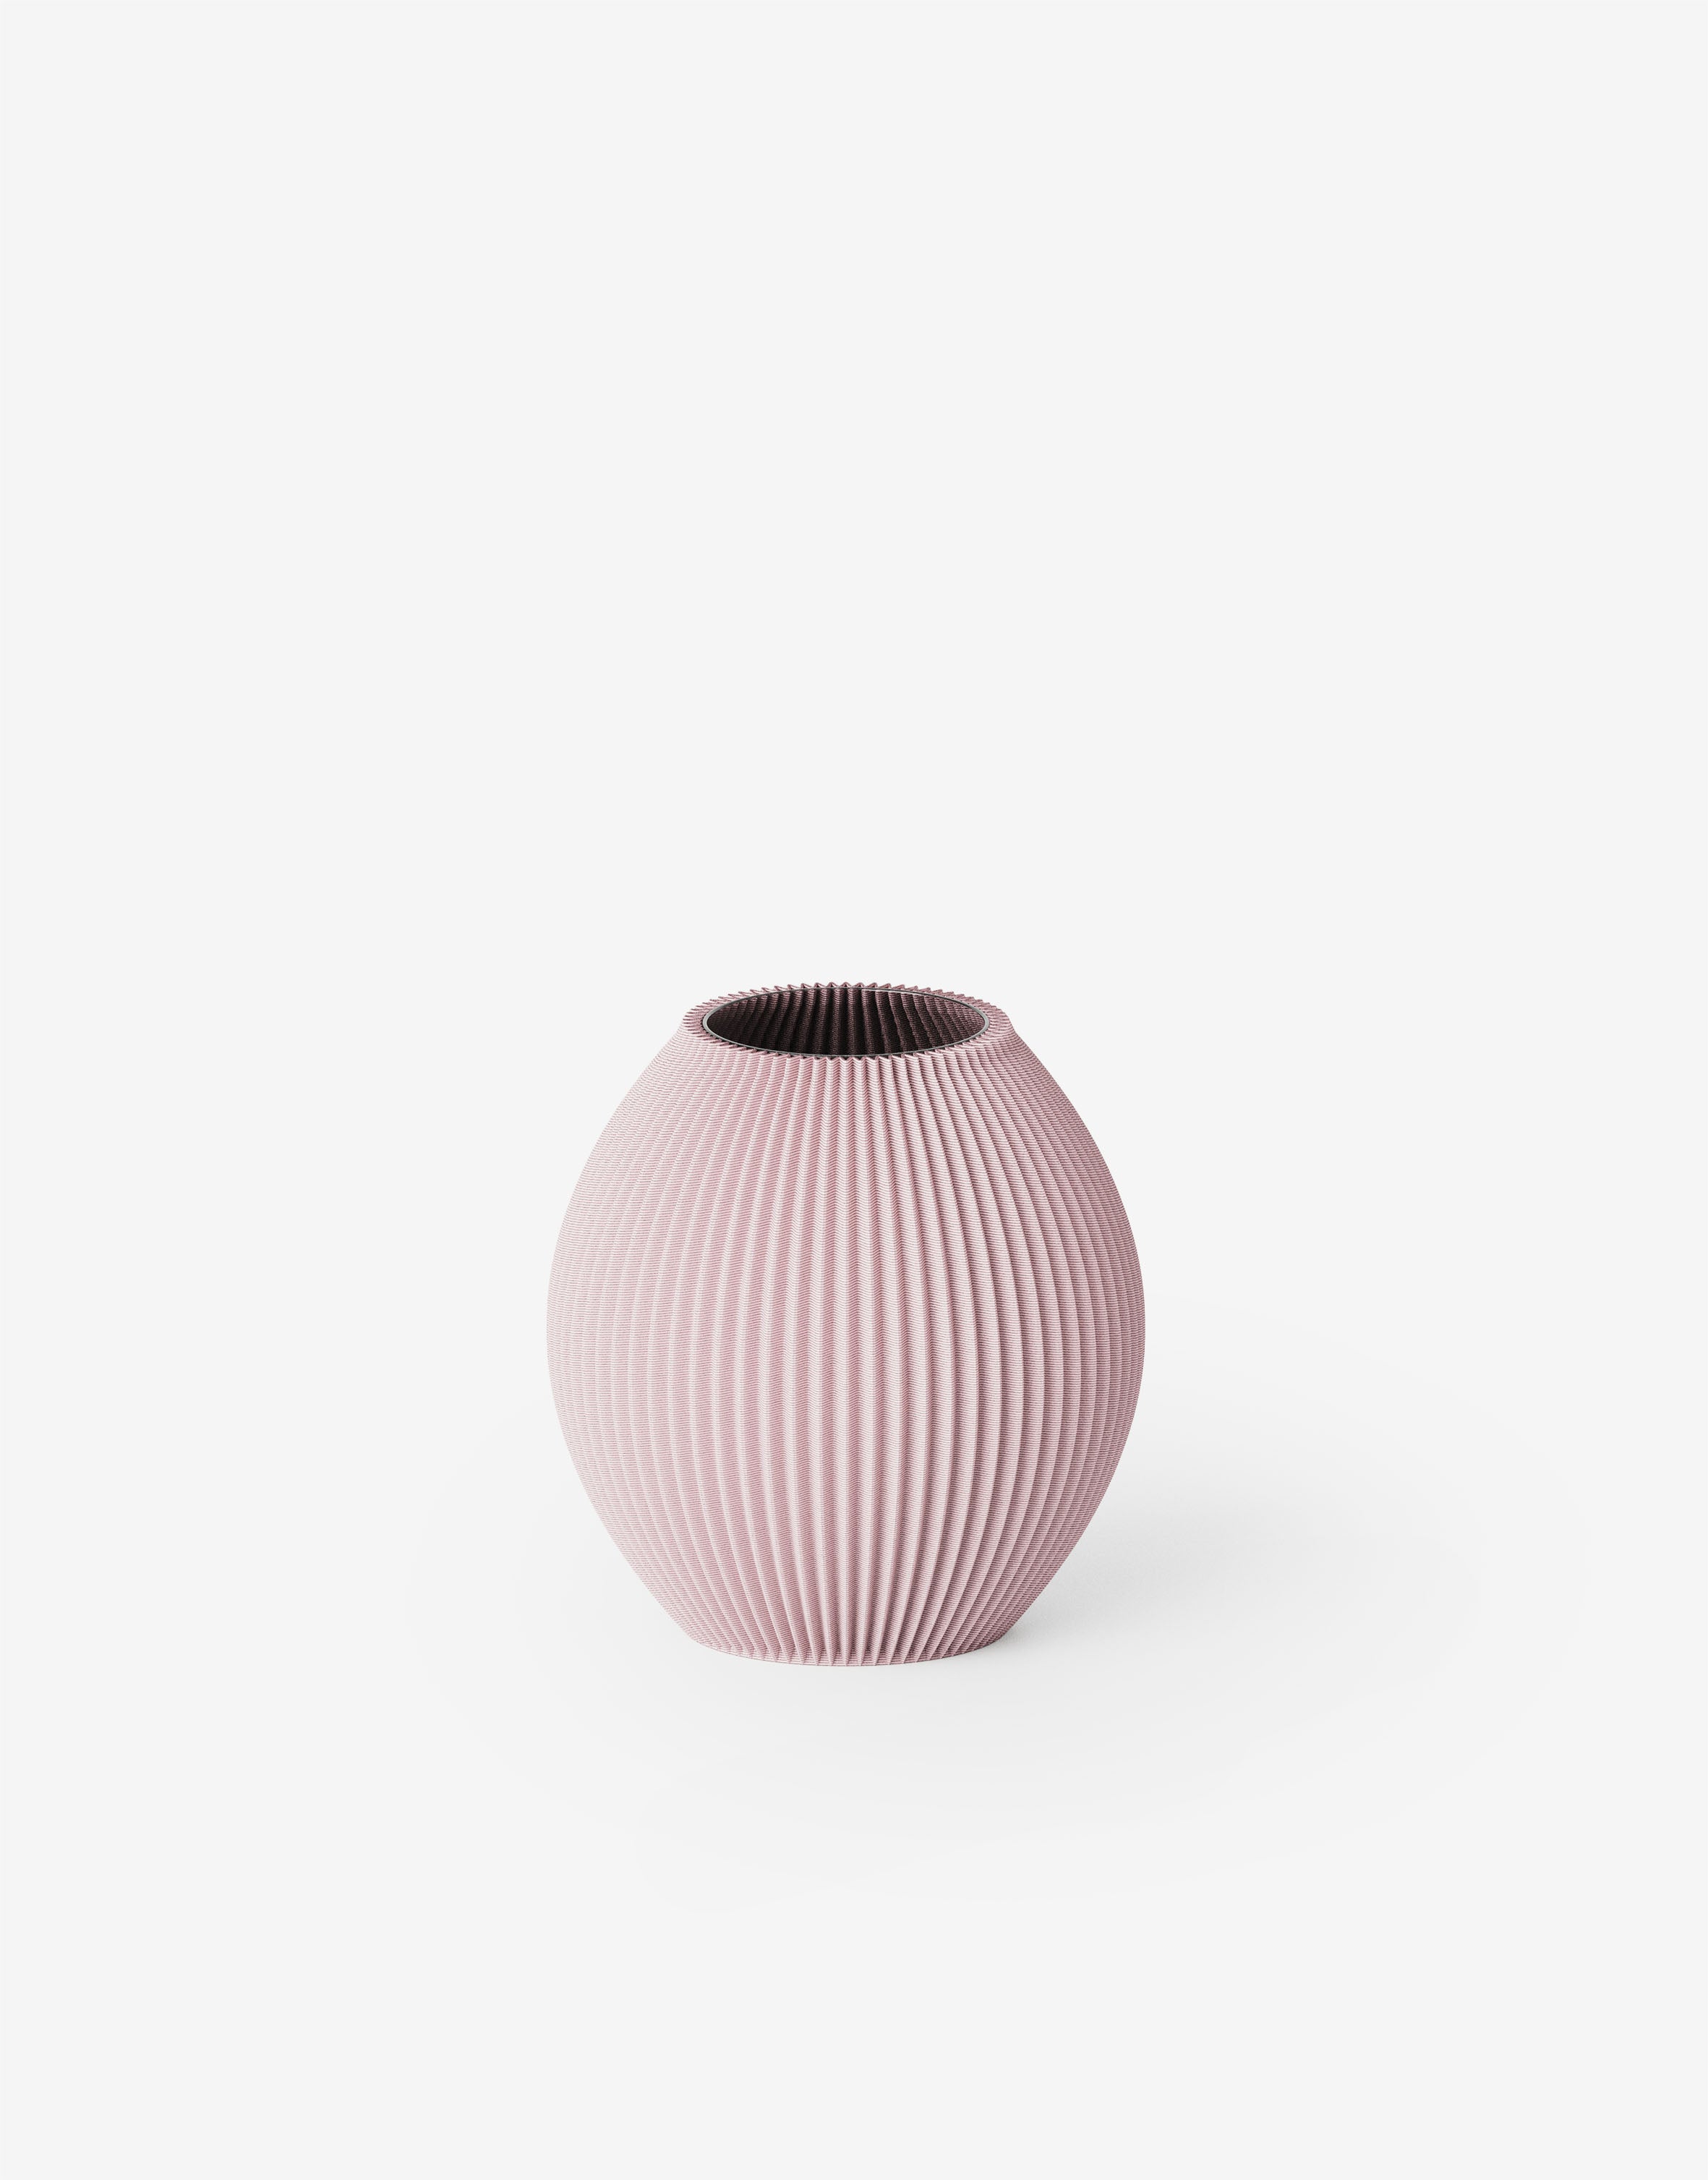 Poke - Vase